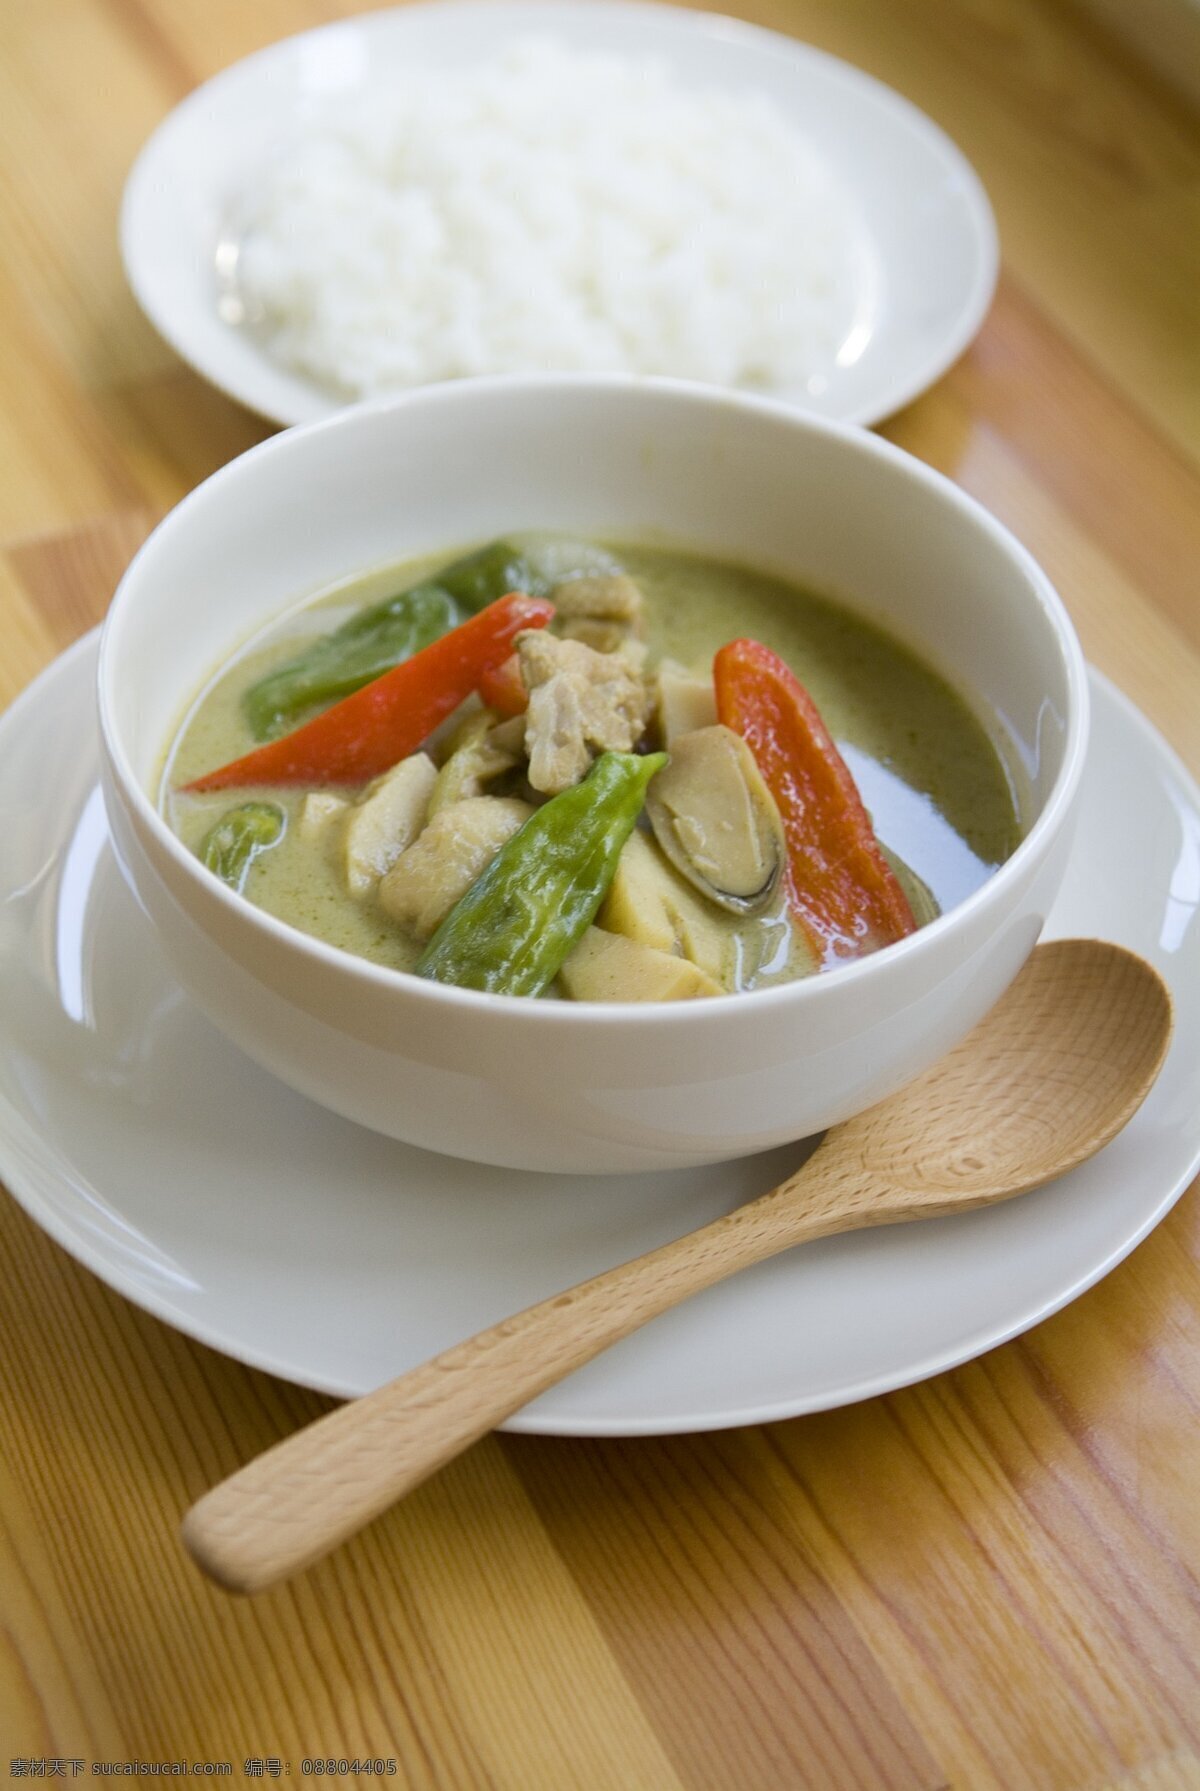 单份 中式 午餐 白米饭 素肠 椒类 浓汤 碗盘 小勺 食物静态摄影 美食 传统美食 餐饮美食